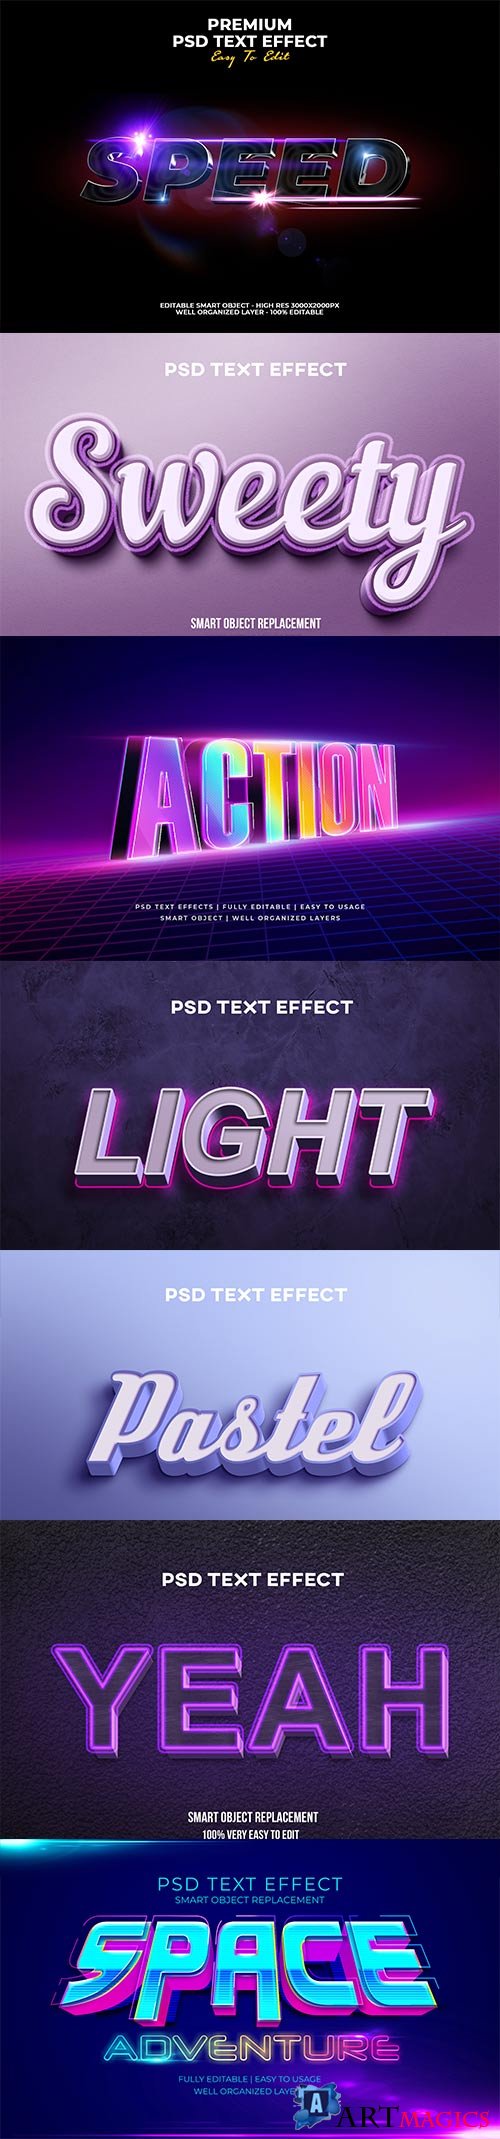 Psd text effect set vol 24